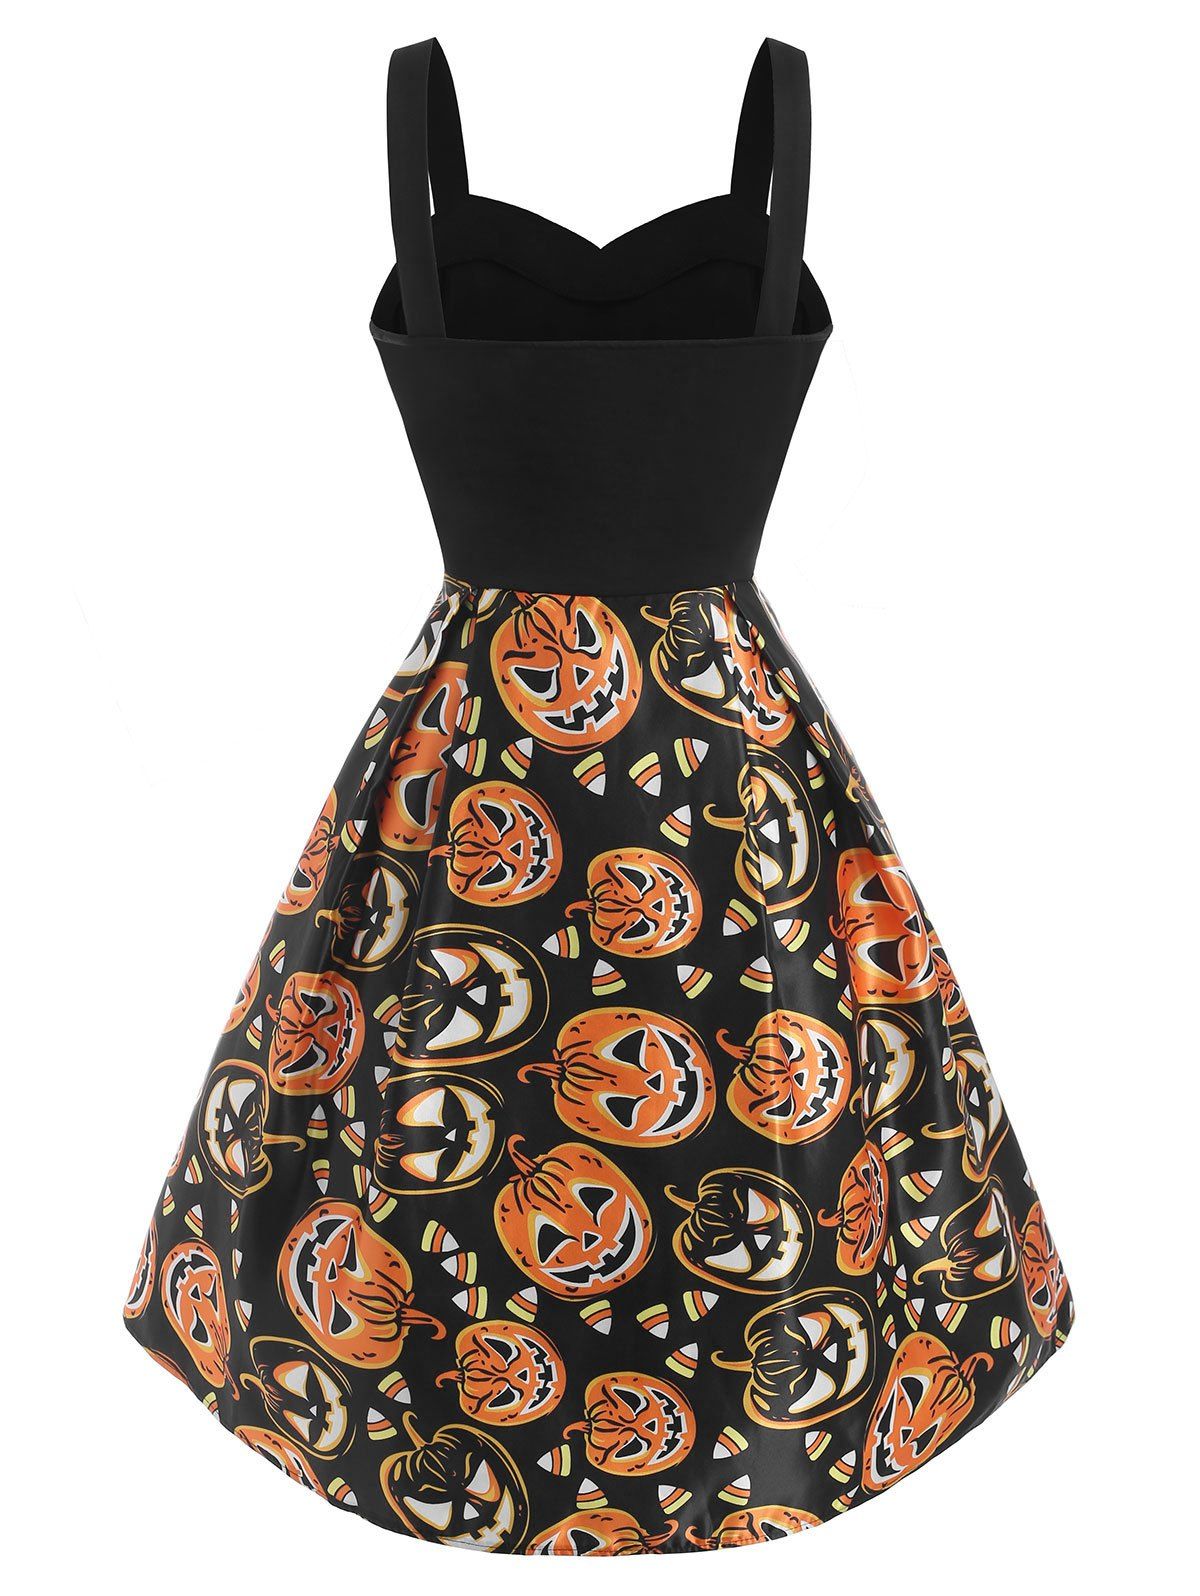 [33% OFF] 2020 Halloween Pumpkin Lace Up Sweetheart Dress In ORANGE ...